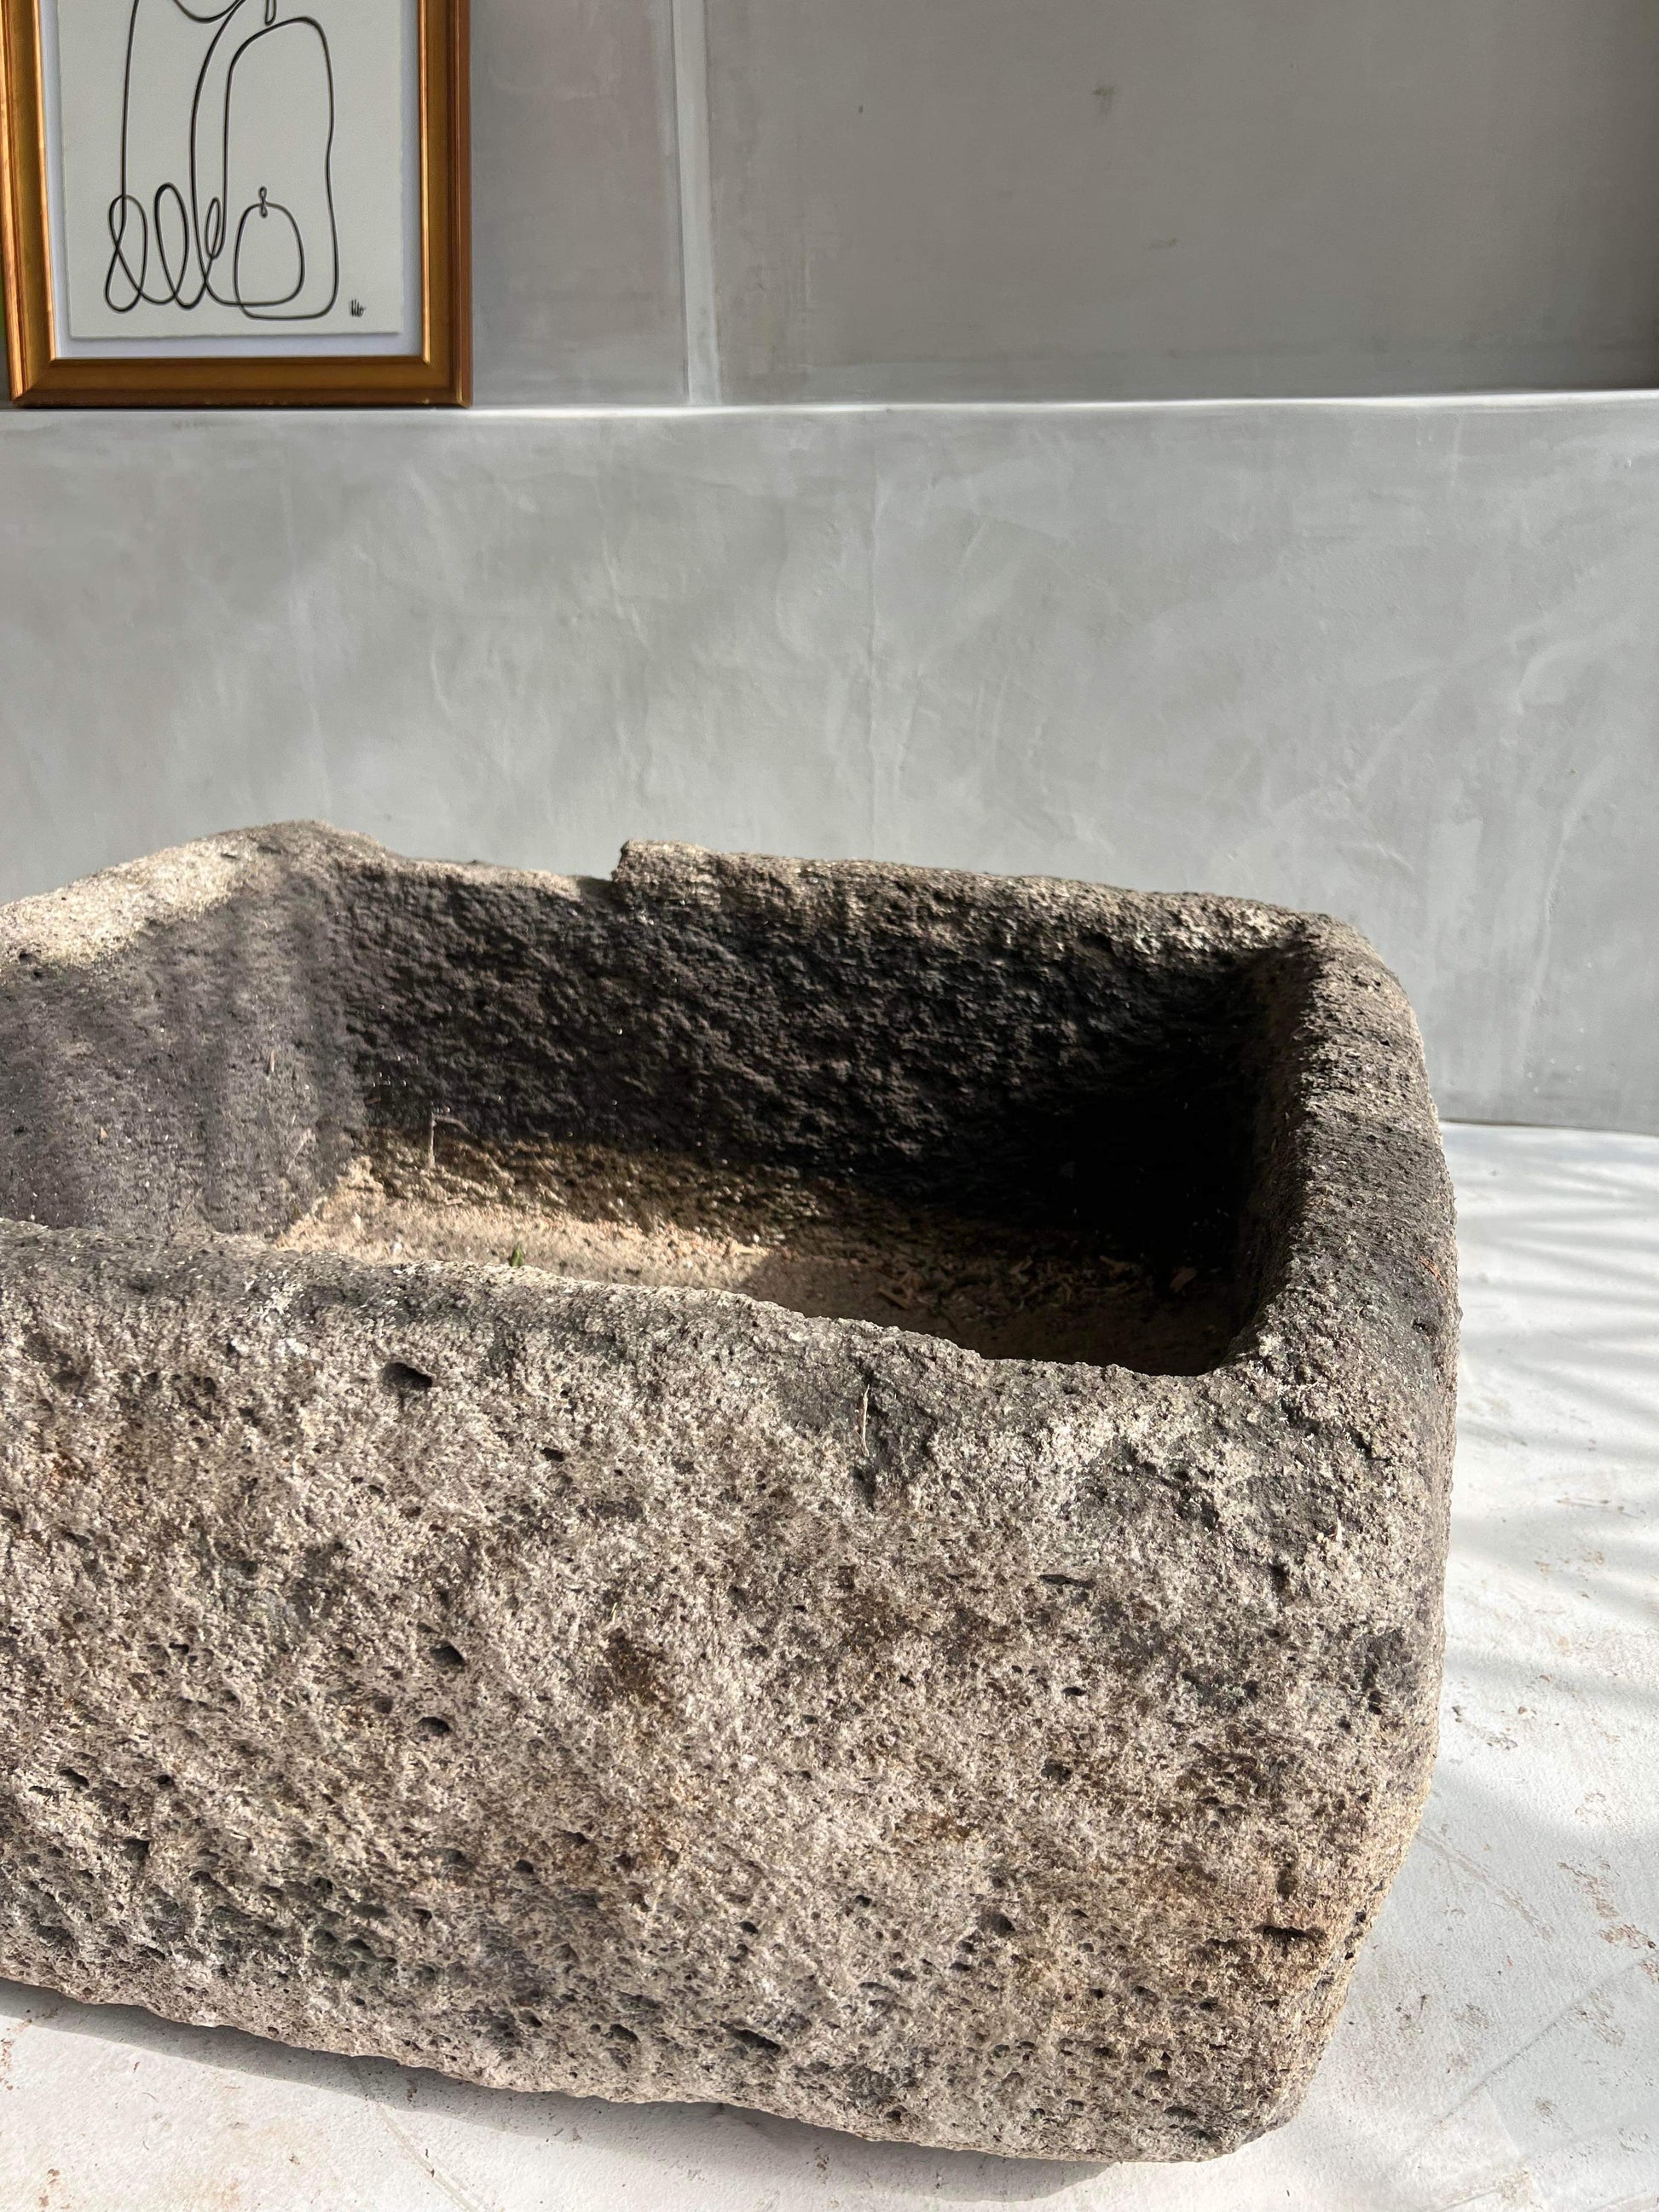 Unique antique limestone pot interior design los angeles by birk